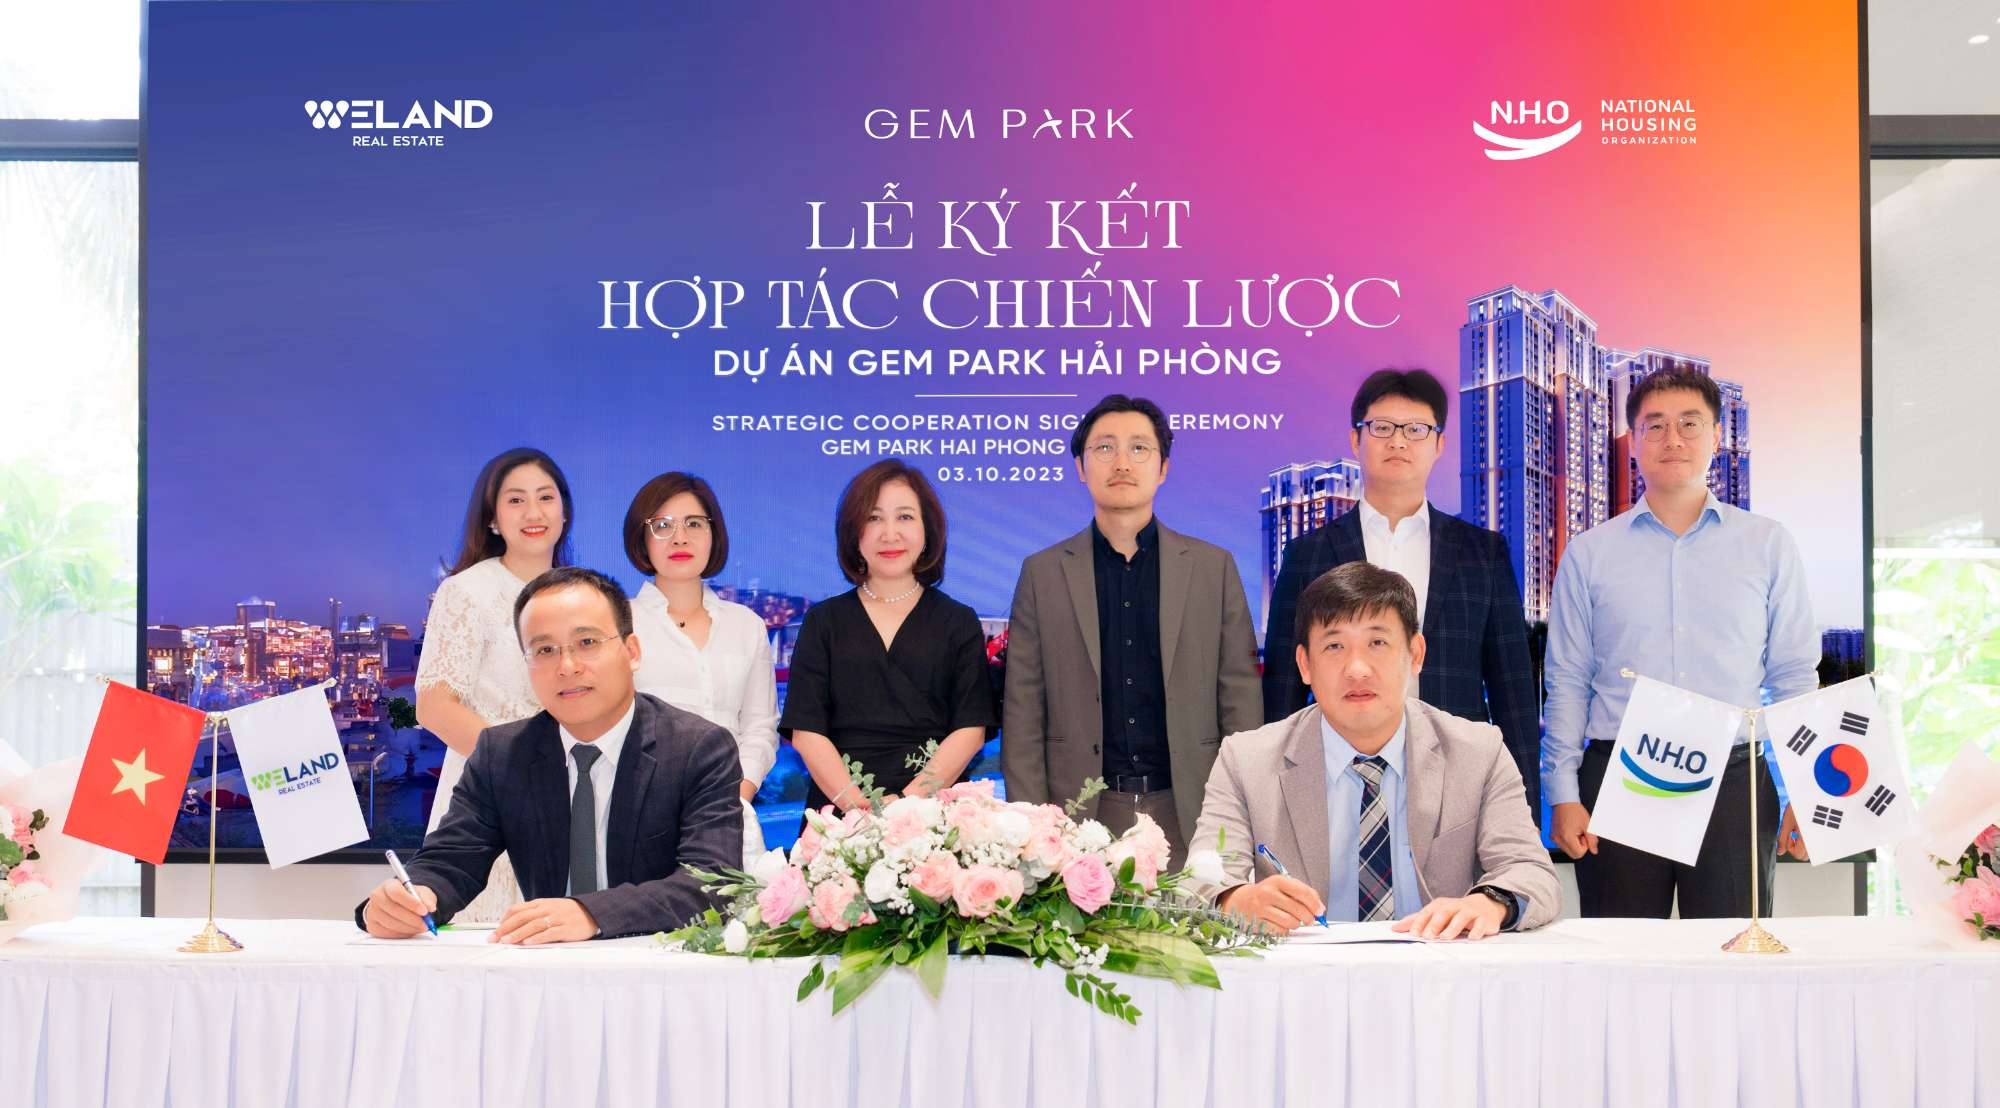 N.H.O và Weland ký kết hợp tác chiến lược dự án Gem Park - Hải Phòng